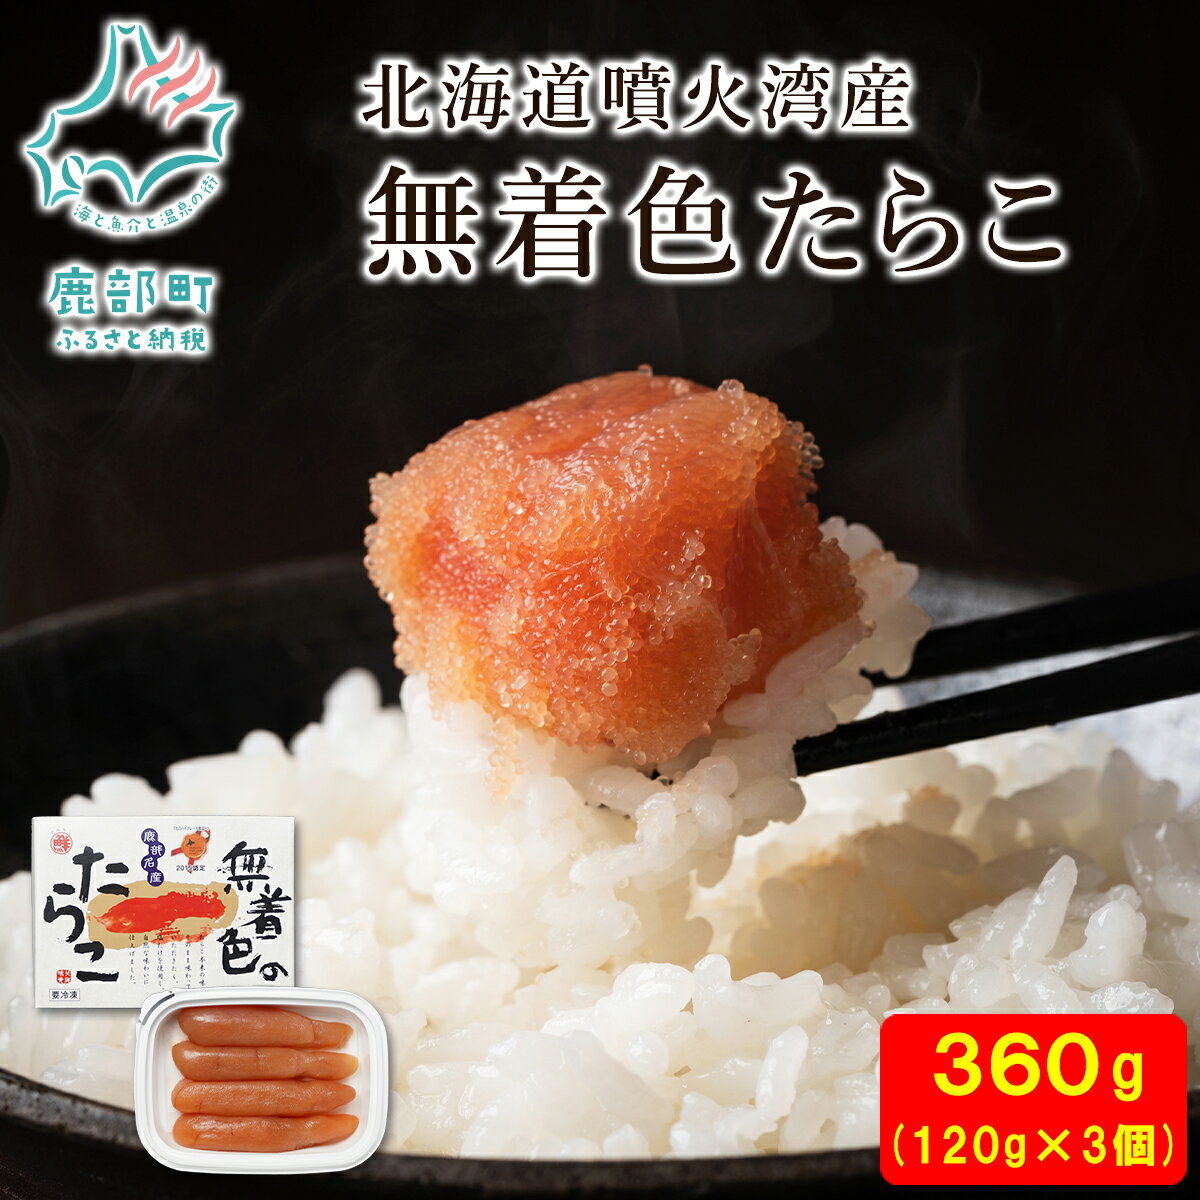 【ふるさと納税】たらこ 丸鮮道場水産 北海道 無着色たらこ 120g×3個 （360g）タラコ 魚介類